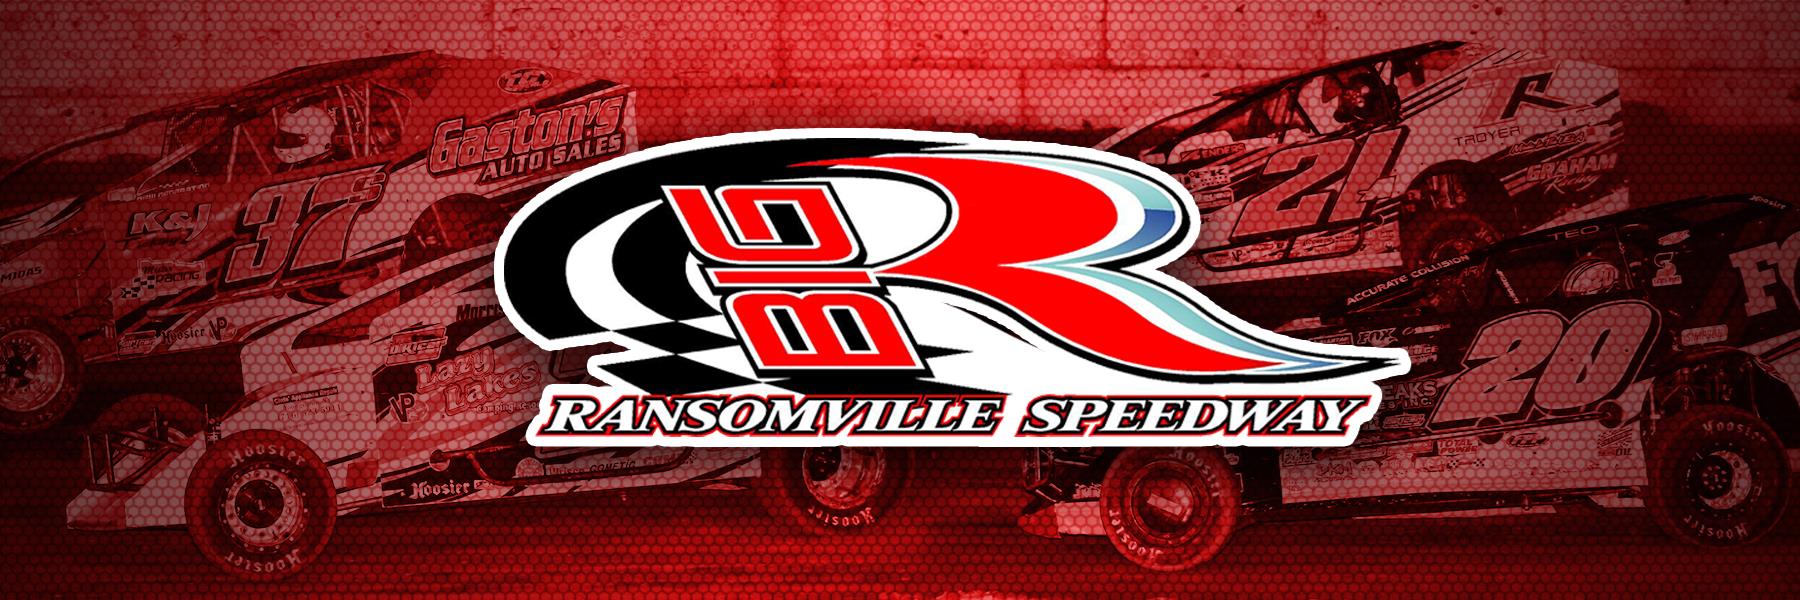 4/30/2021 - Ransomville Speedway